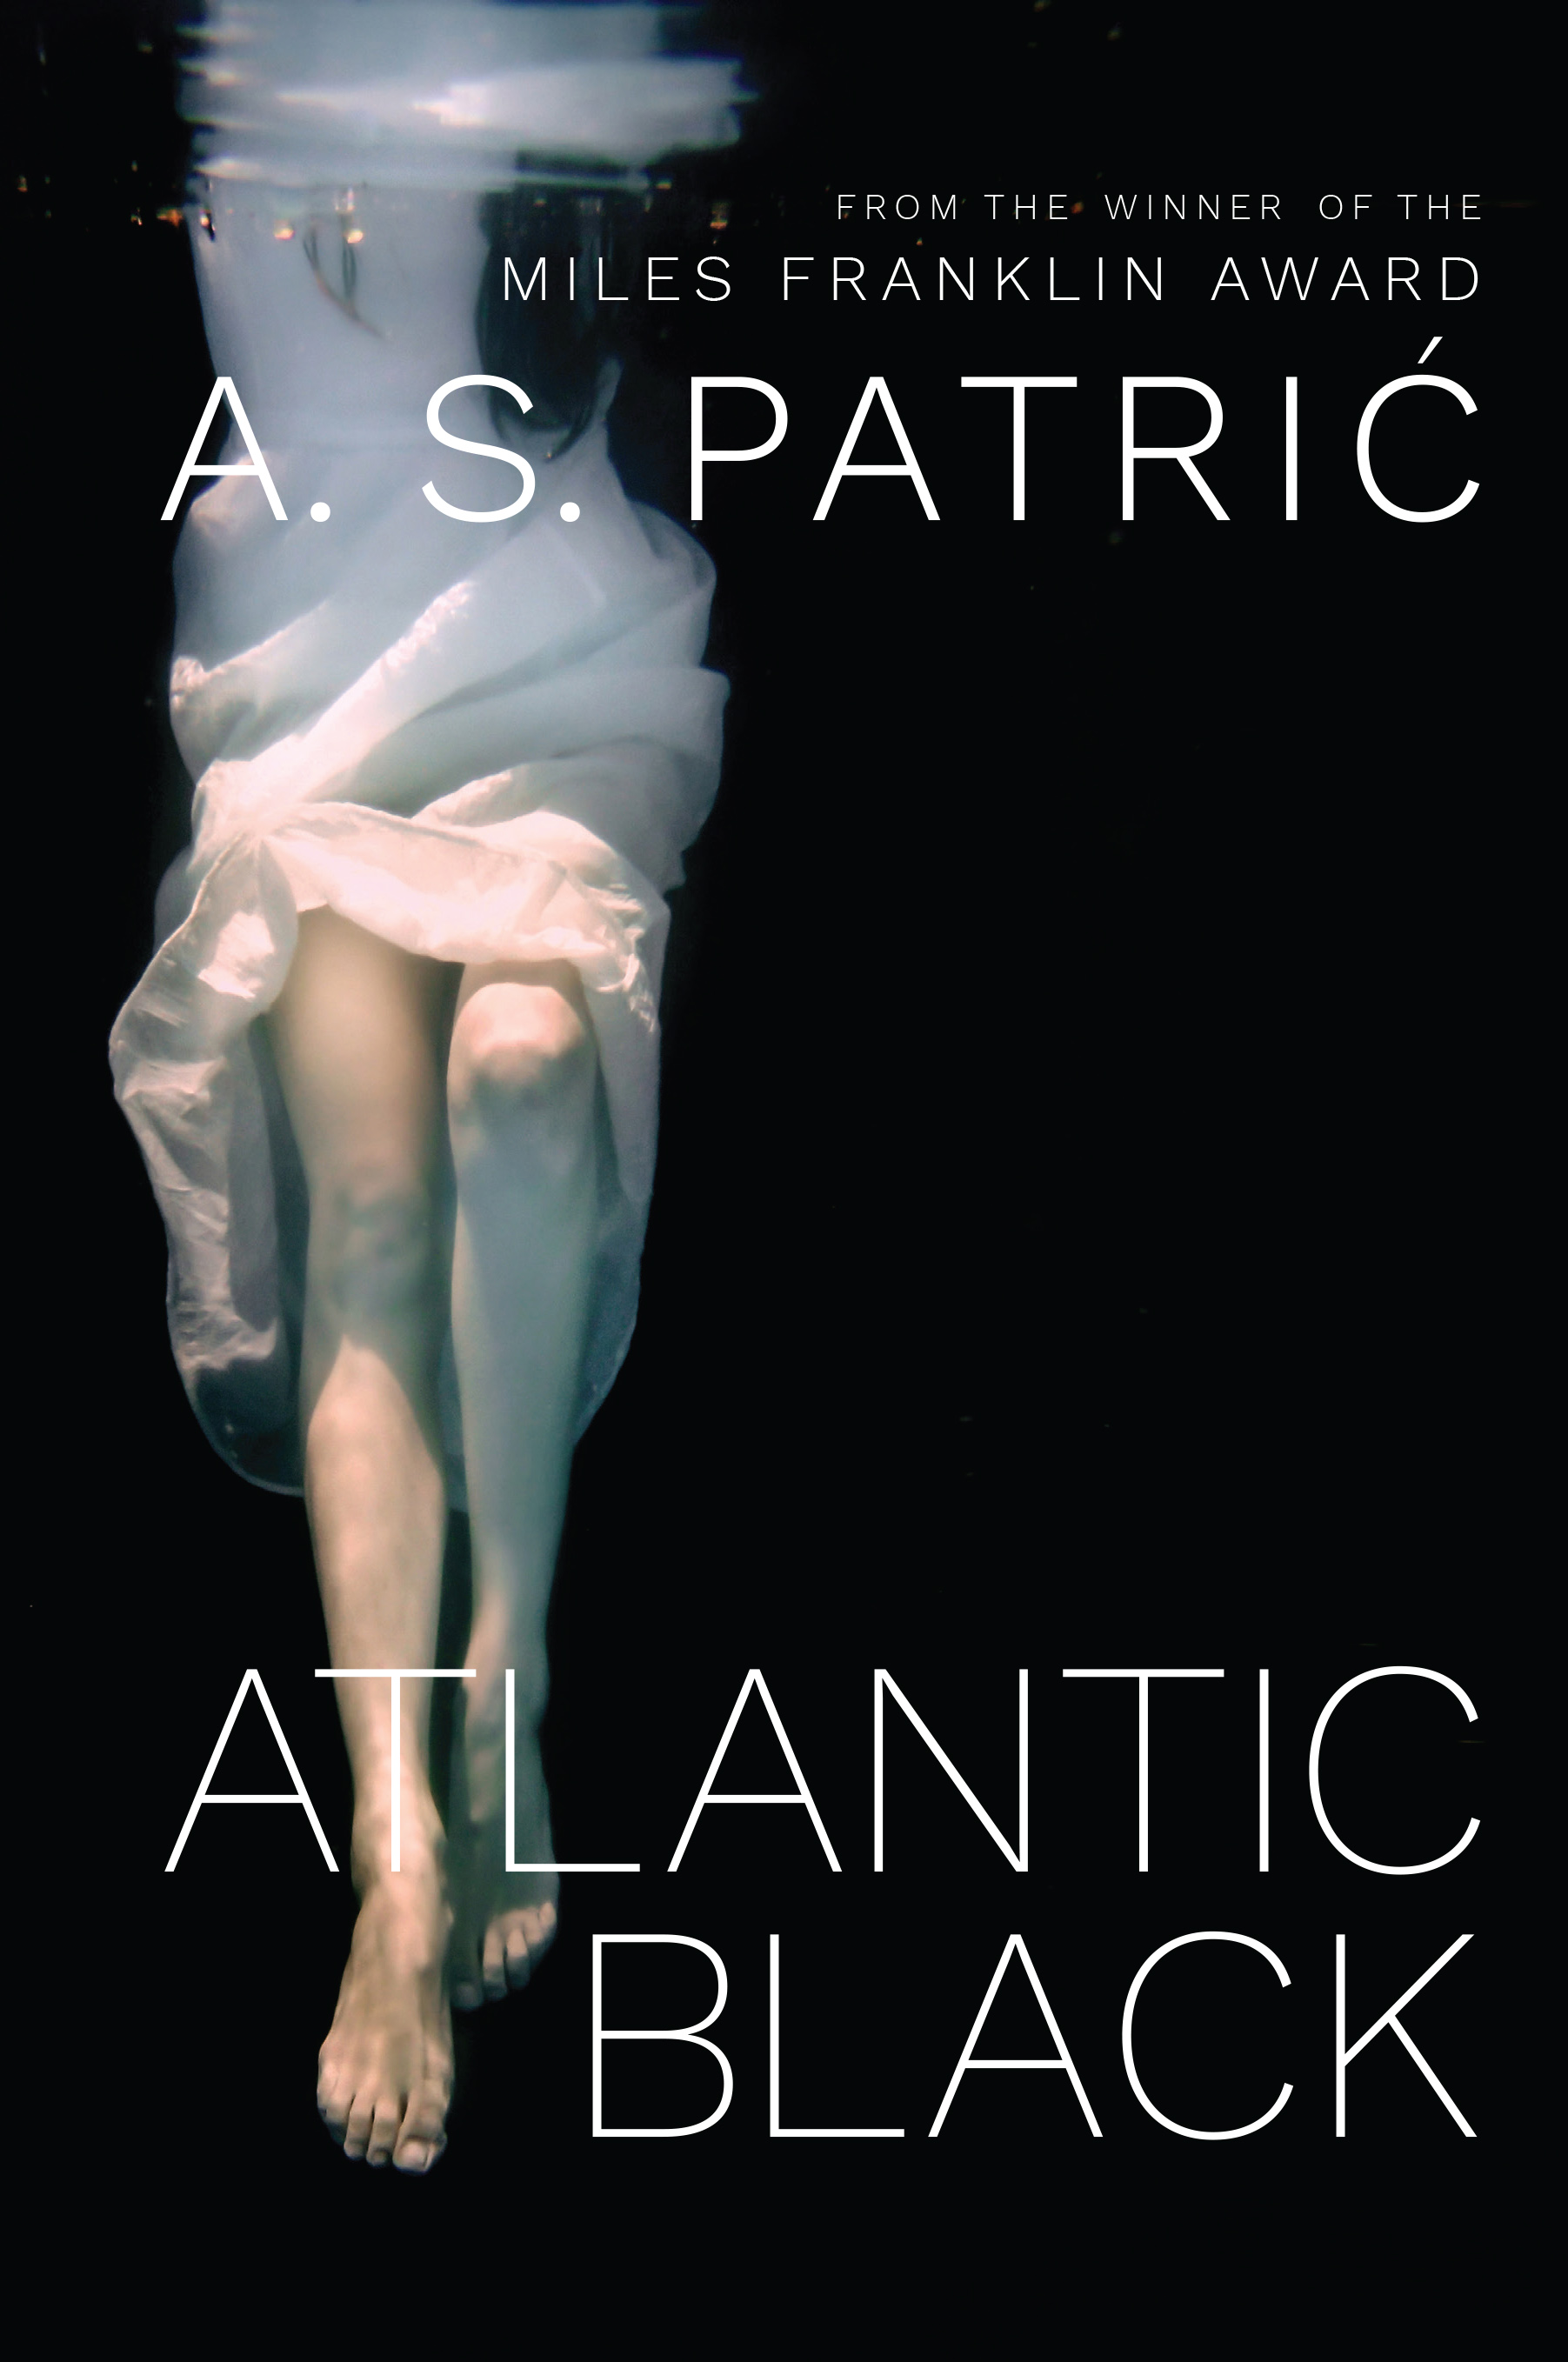  Book Review – Atlantic Black